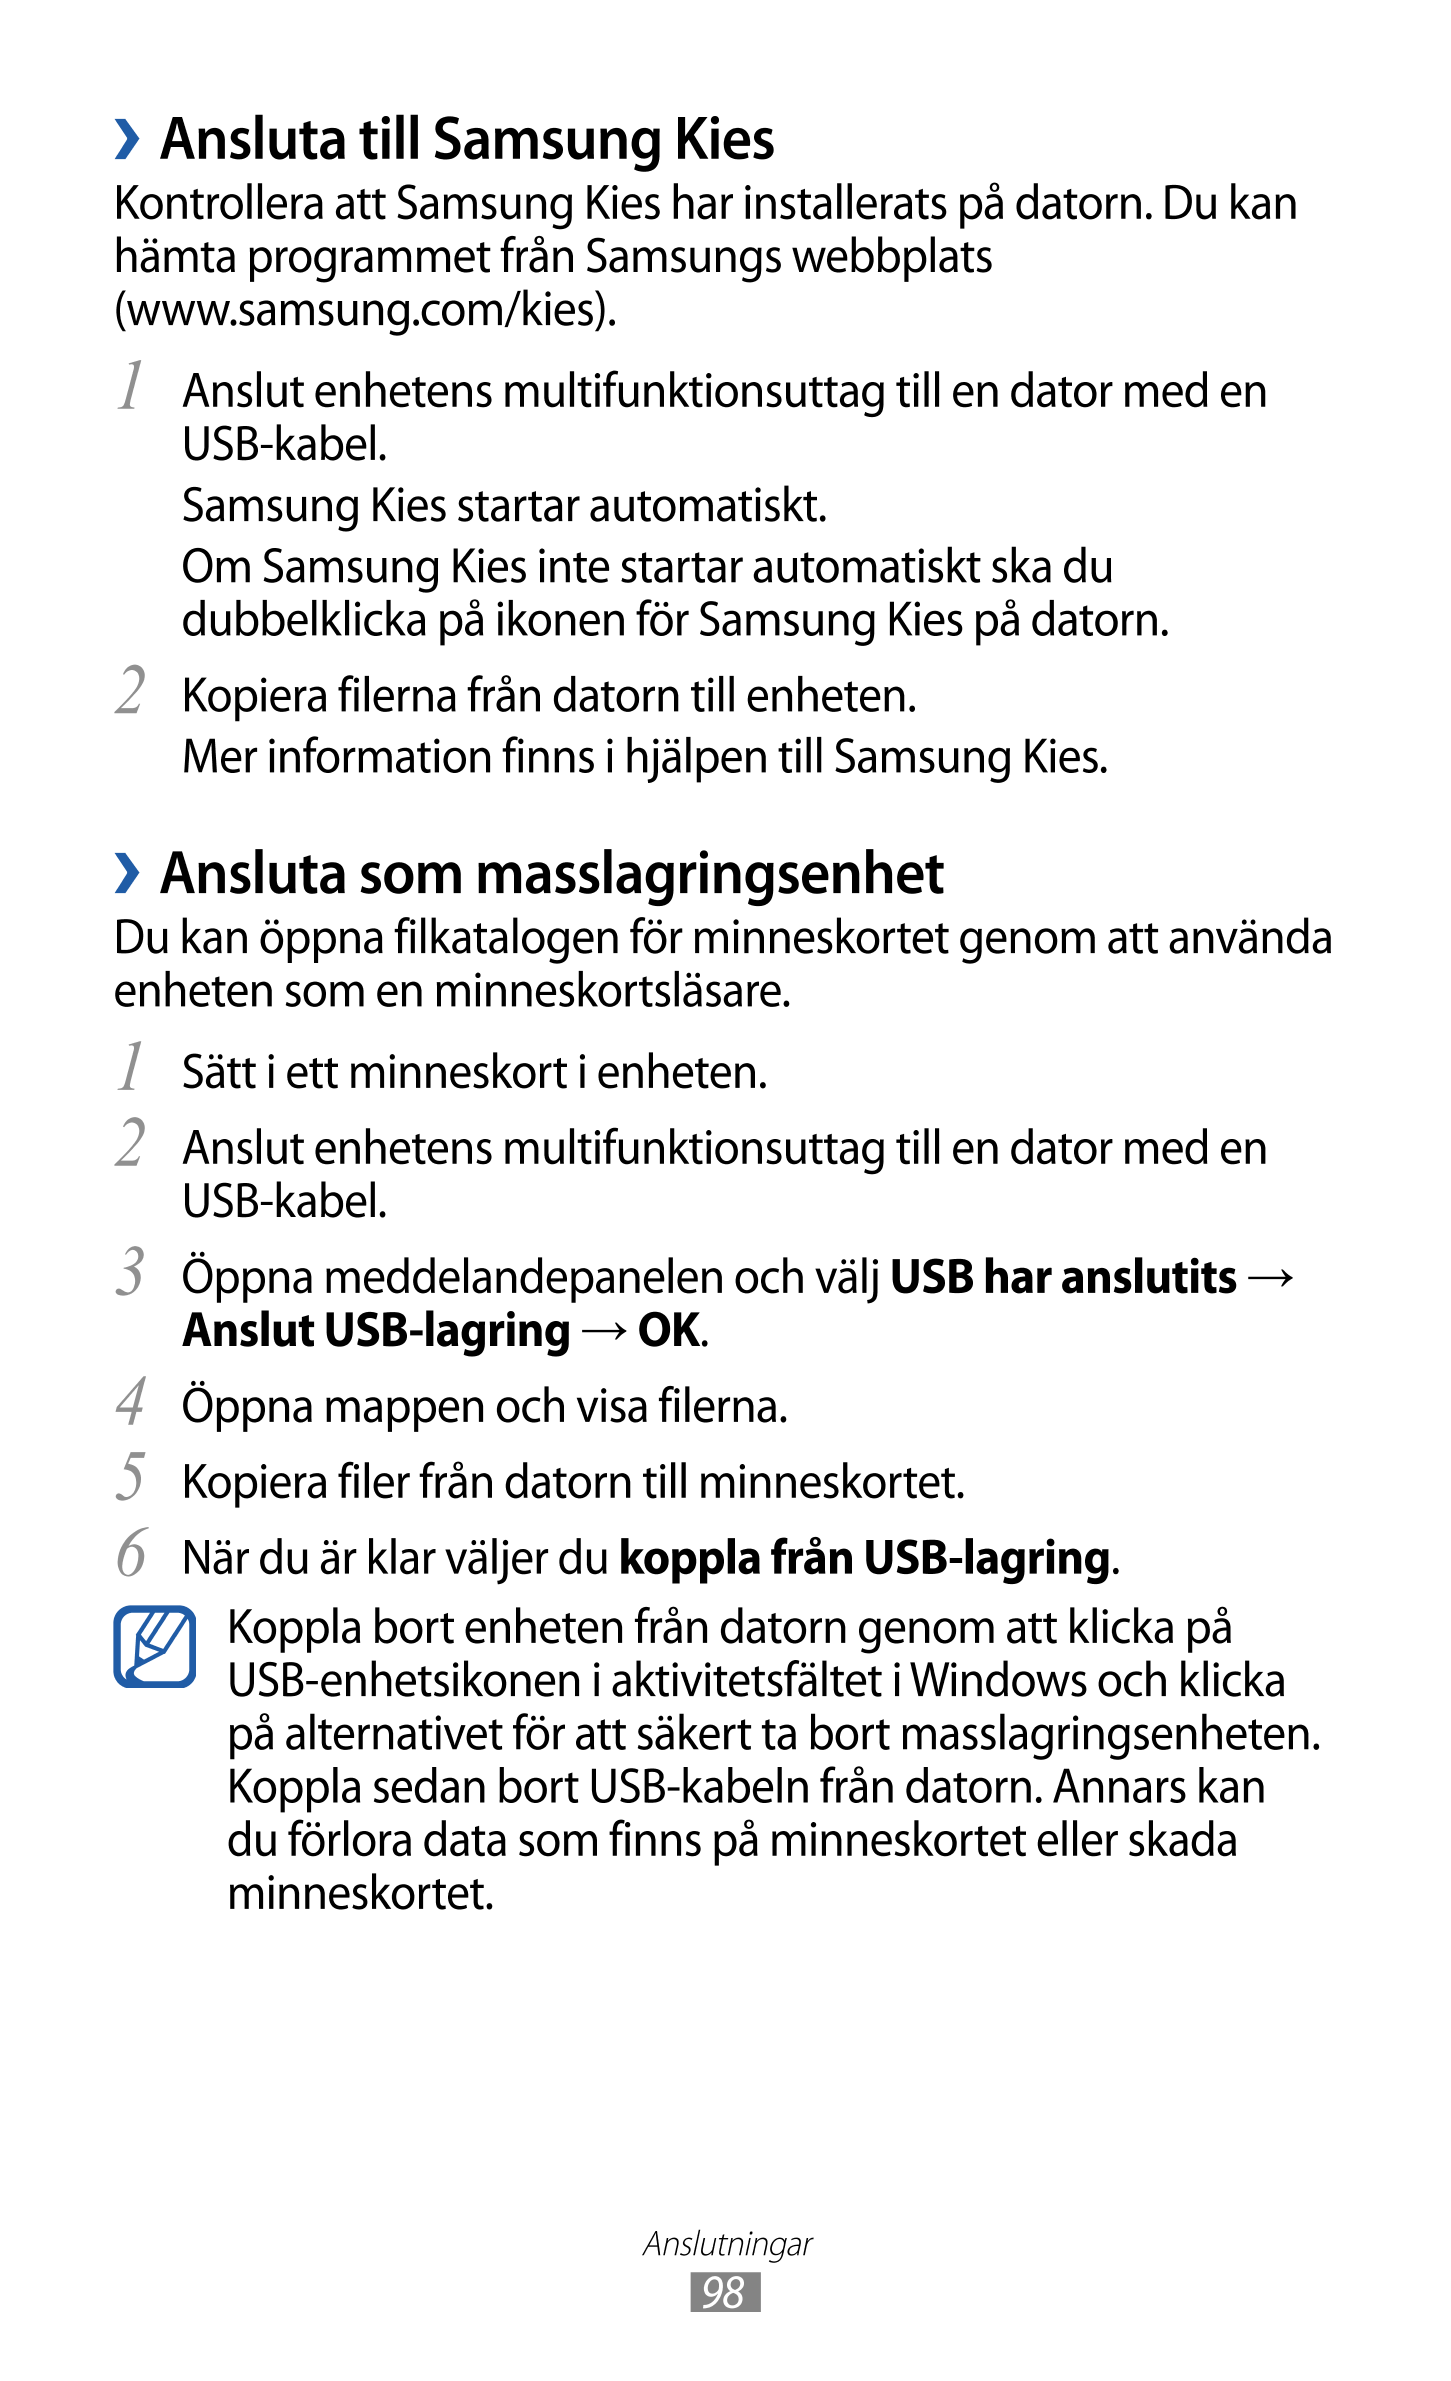 › Ansluta till Samsung Kies
Kontrollera att Samsung Kies har installerats på datorn. Du kan 
hämta programmet från Samsungs webb